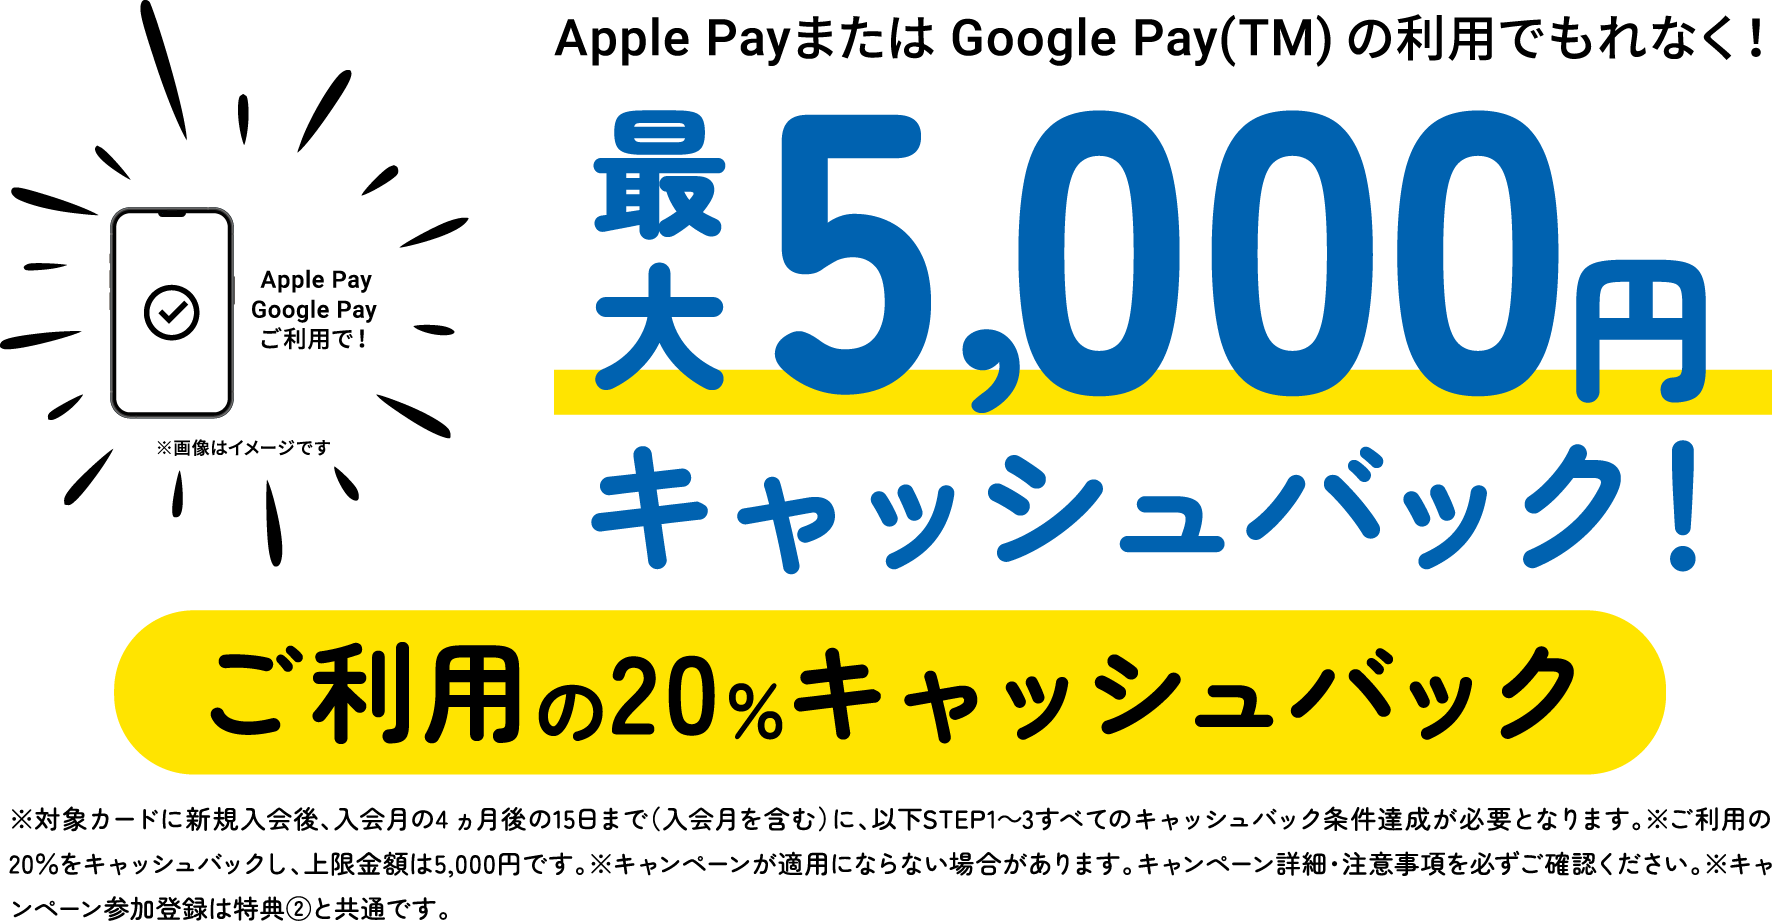 Apple PayまたはGoogle Pay(TM)の利用でもれなく！最大5,000円キャッシュバック！ご利用の20％キャッシュバック　※対象カードに新規入会後、入会月の4ヵ月後の15日まで（入会月を含む）に、以下STEP1〜3すべてのキャッシュバック条件達成が必要となります。※ご利用の20％をキャッシュバックし、上限金額は5,000円です。※キャンペーンが適用にならない場合があります。キャンペーン詳細・注意事項を必ずご確認ください。※キャンペーン参加登録は特典②と共通です。